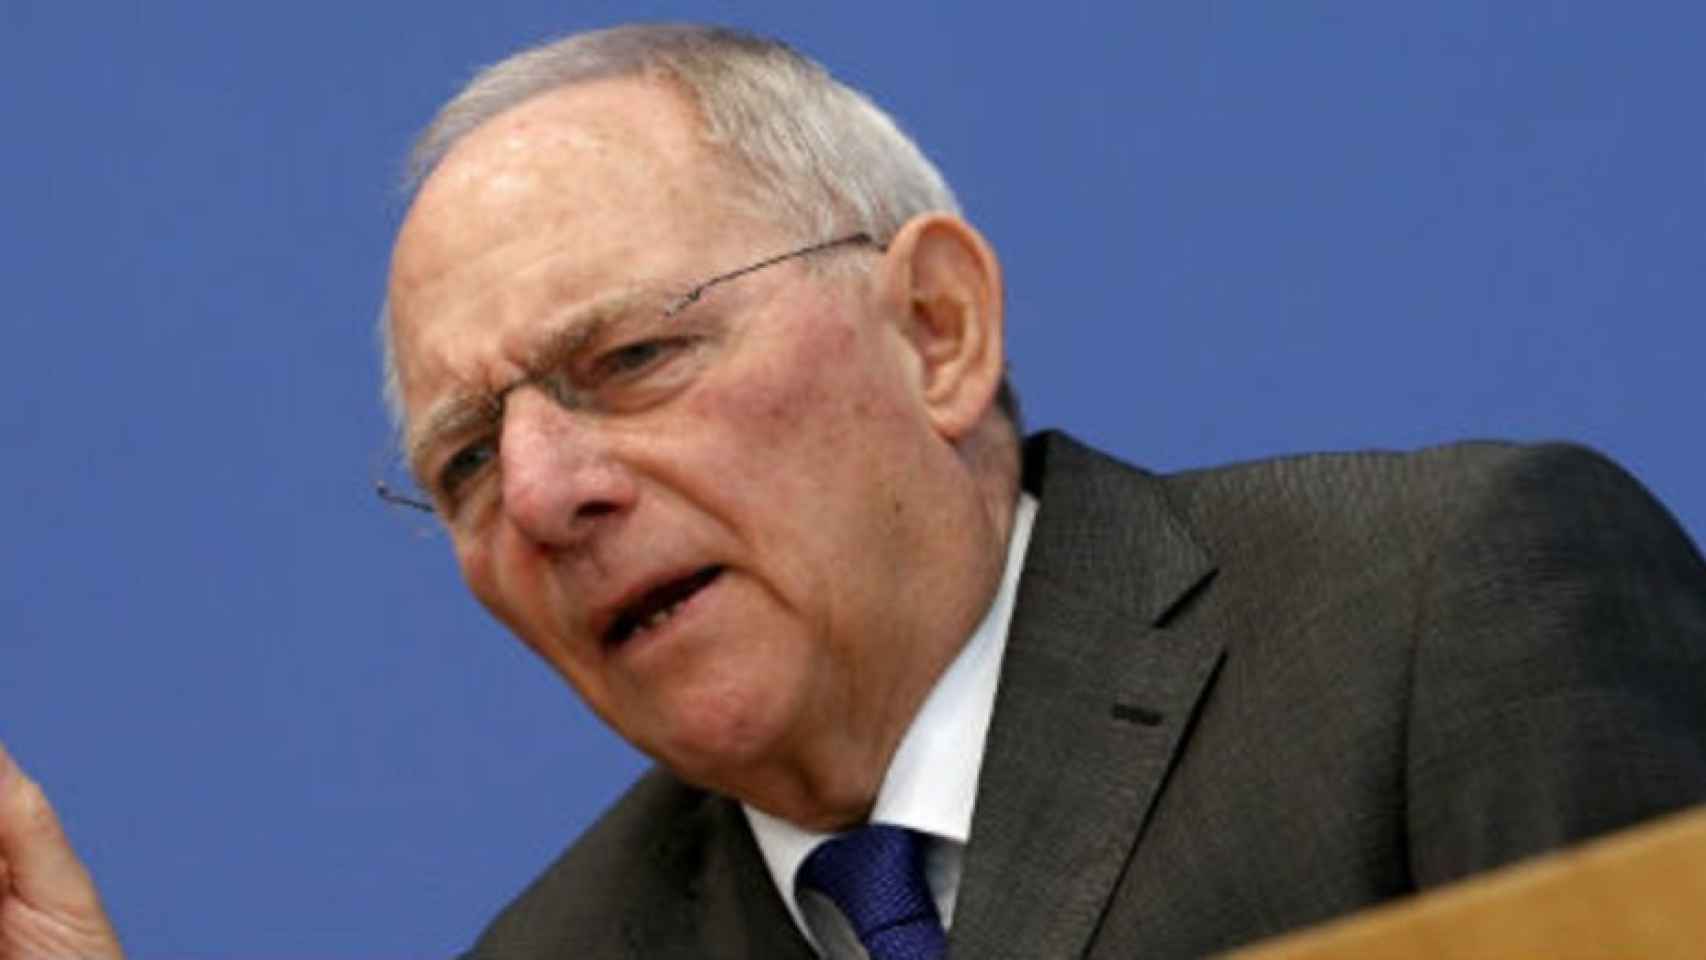 Schäuble dejará Finanzas para asumir presidencia del Bundestag, según medios